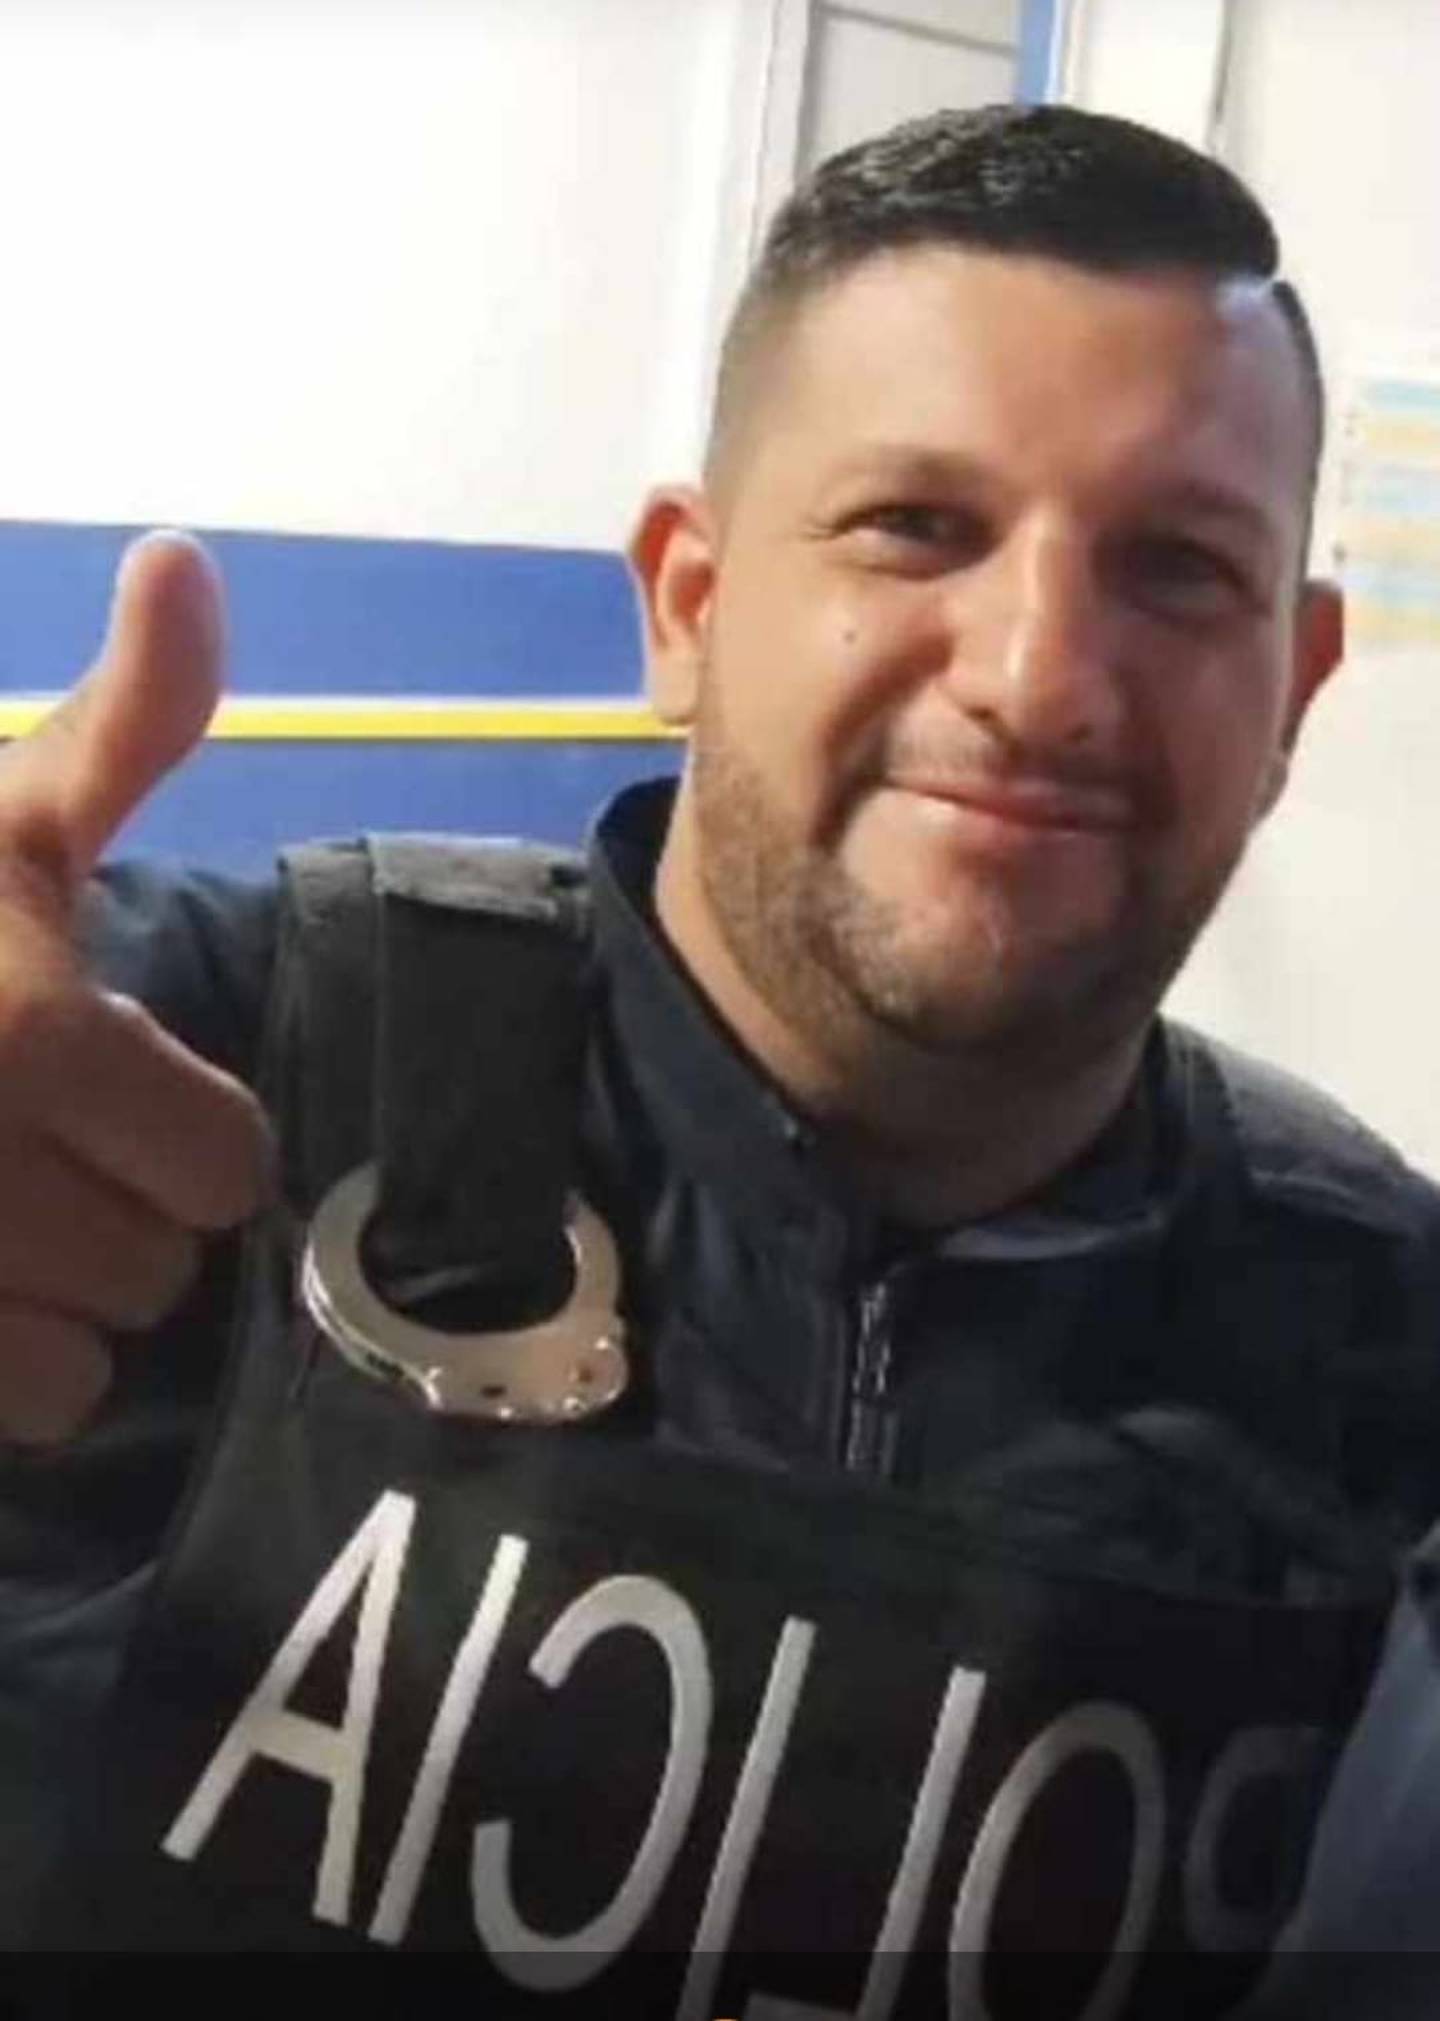 El jefe de la Policía de Acosta, Jairo Mauricio Ortega Mata, de 42 años, quien murió atropellado la mañana de este martes 19 marzo